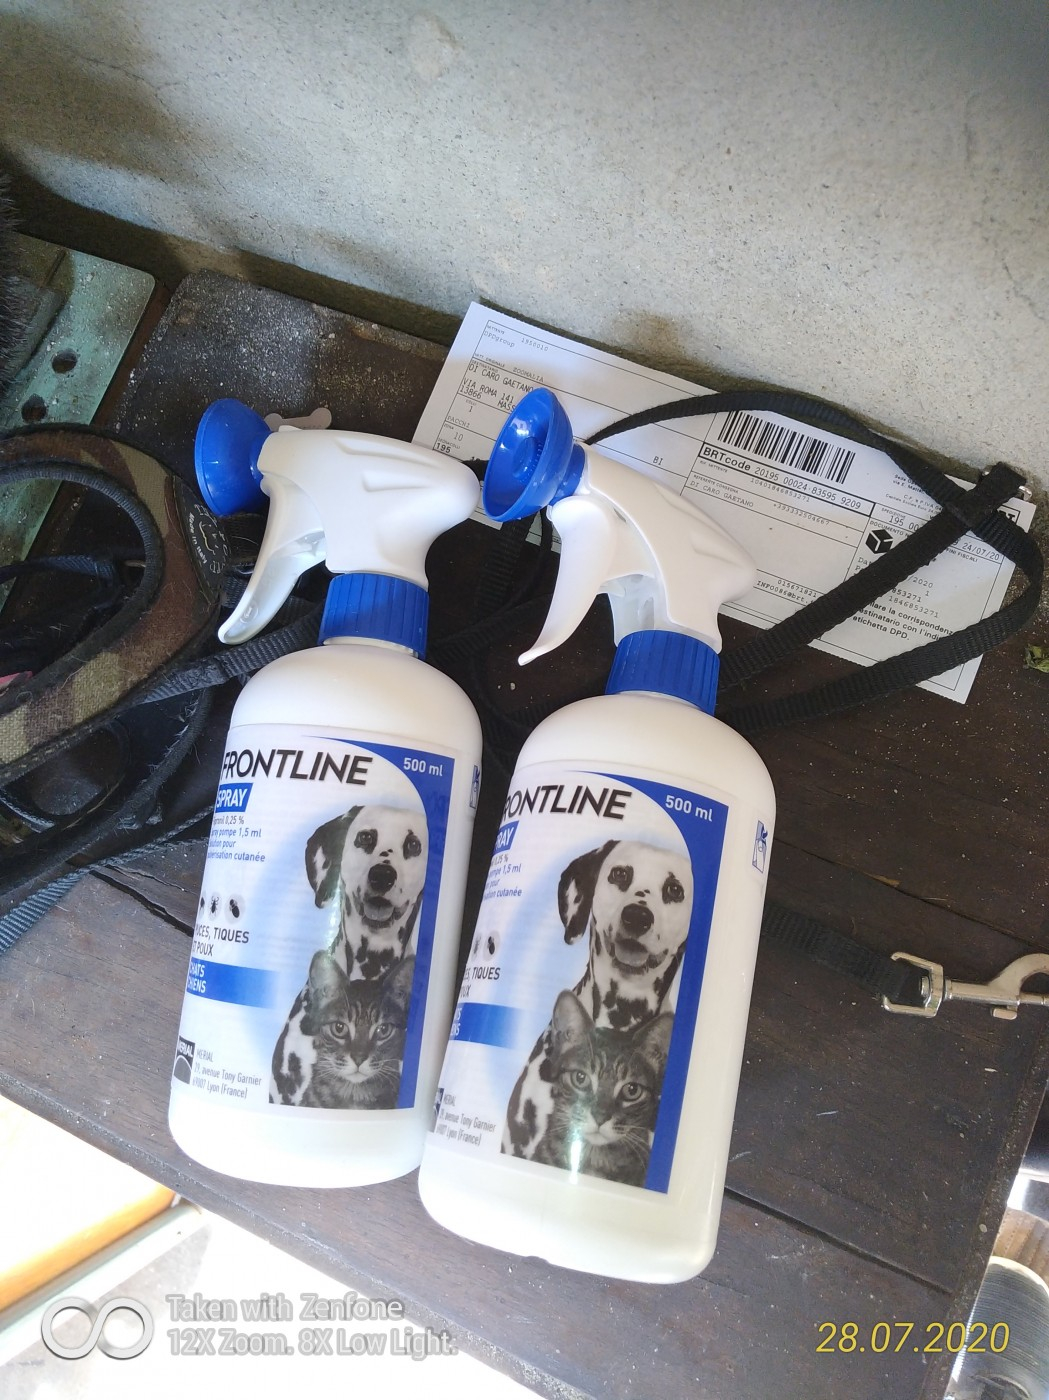 Frontline Spray™ - Anti-tiques, puces et poux pour chats et chiens